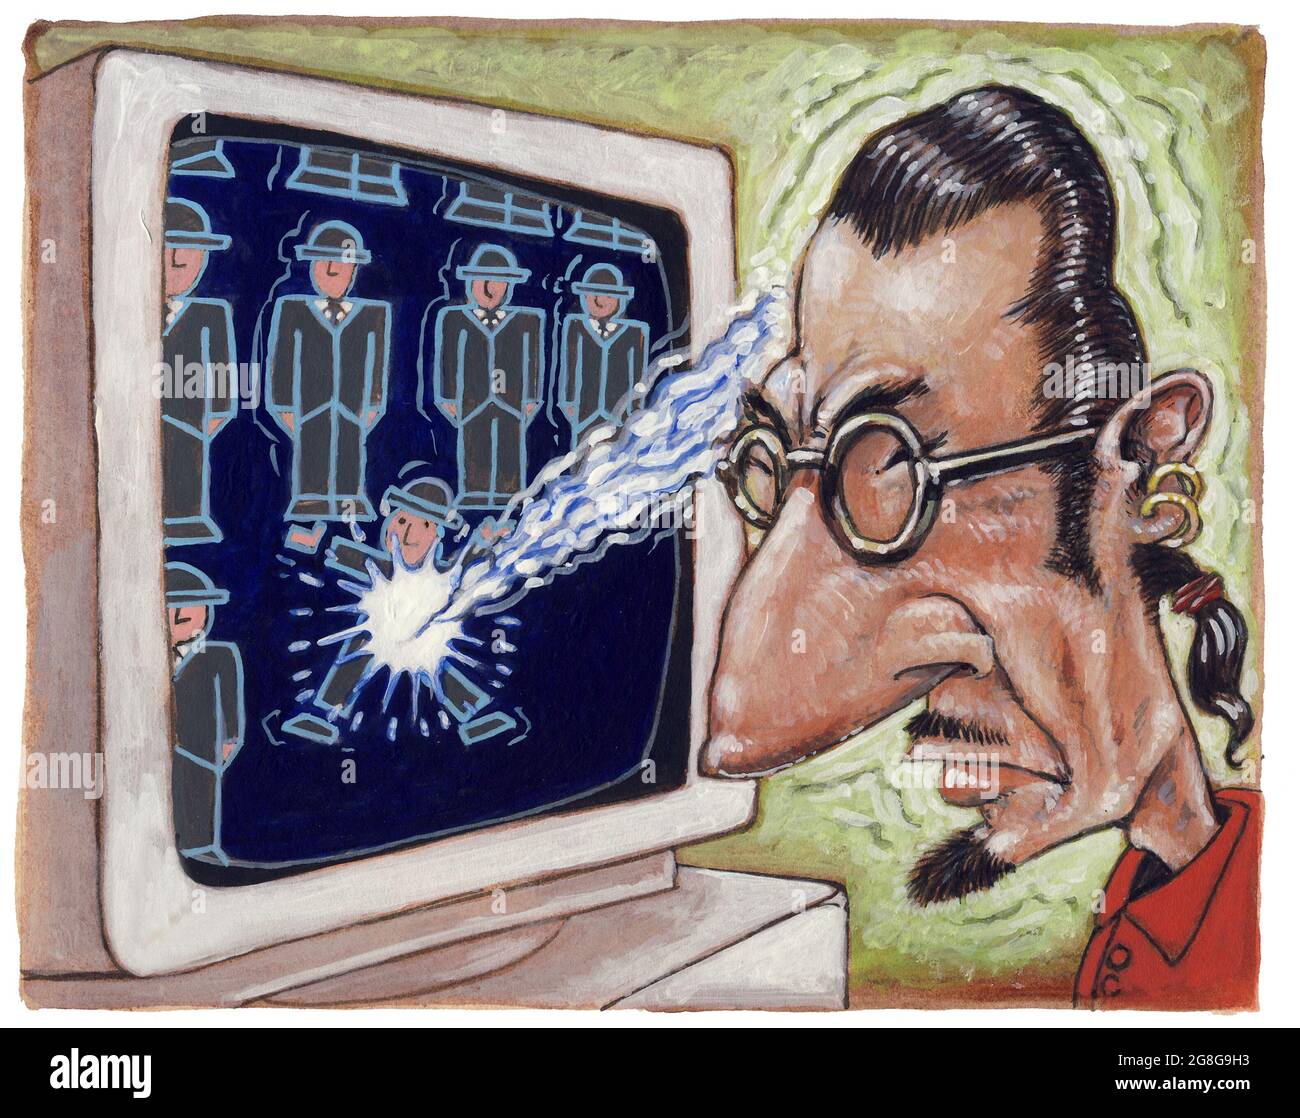 Konzeptkunst Illustration: Der Mensch steuert Computerspiel mit seinem Geist Gehirn-Computer-Schnittstelle, Geist-Maschine-Schnittstelle, kortikale Implantate, medizinische Hilfe Stockfoto